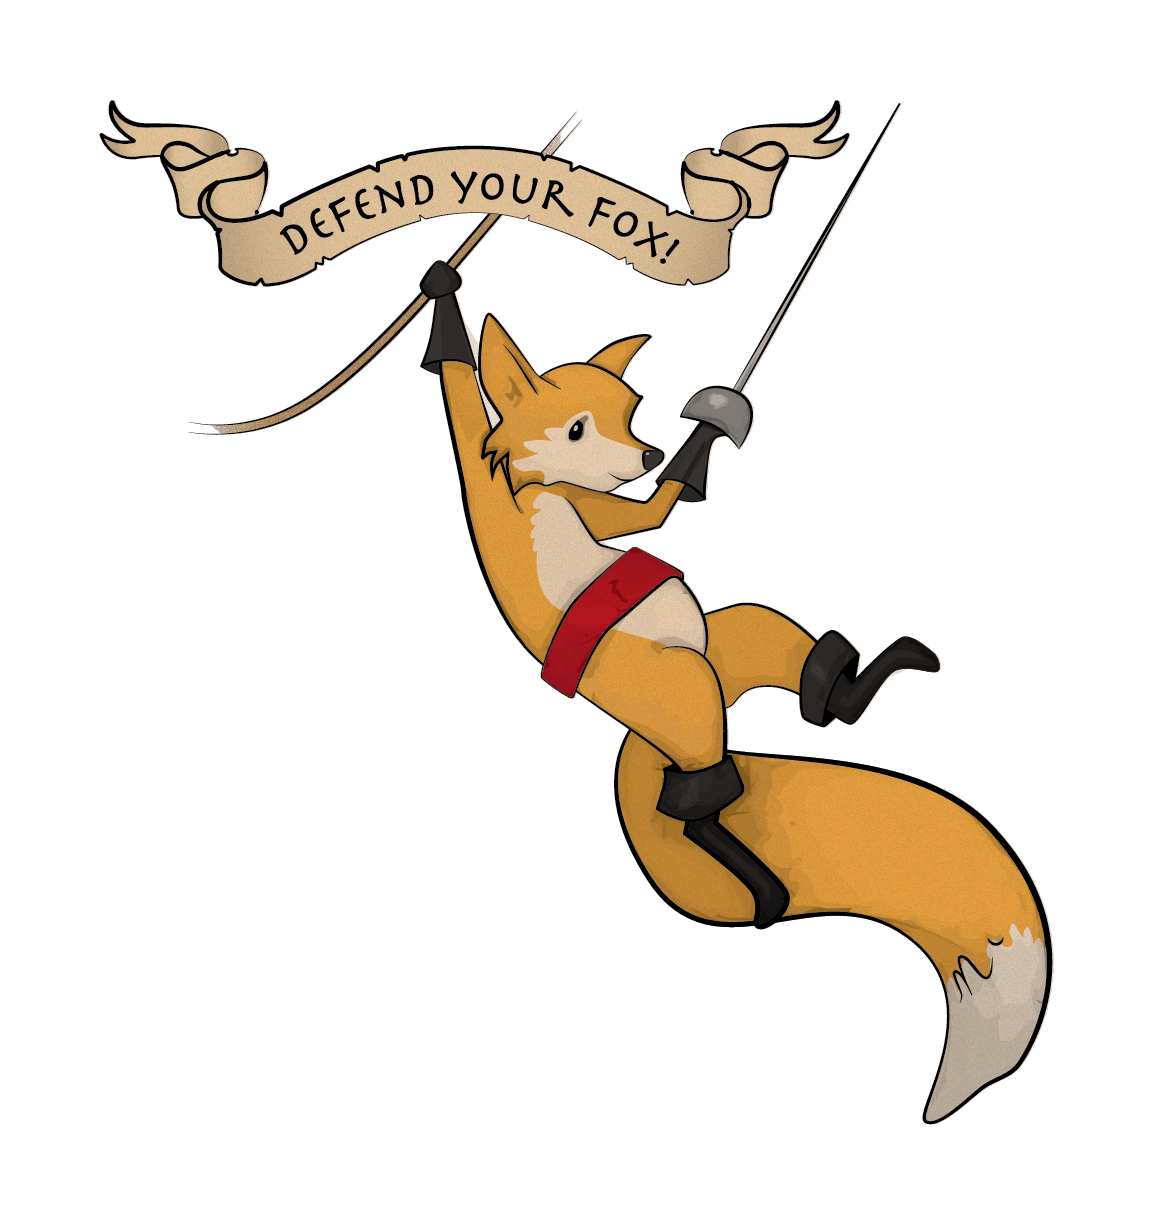 Fox avec une épée, accroché à une corde par l'autre bras, avec la bannière « Defend your Fox! » au-dessus